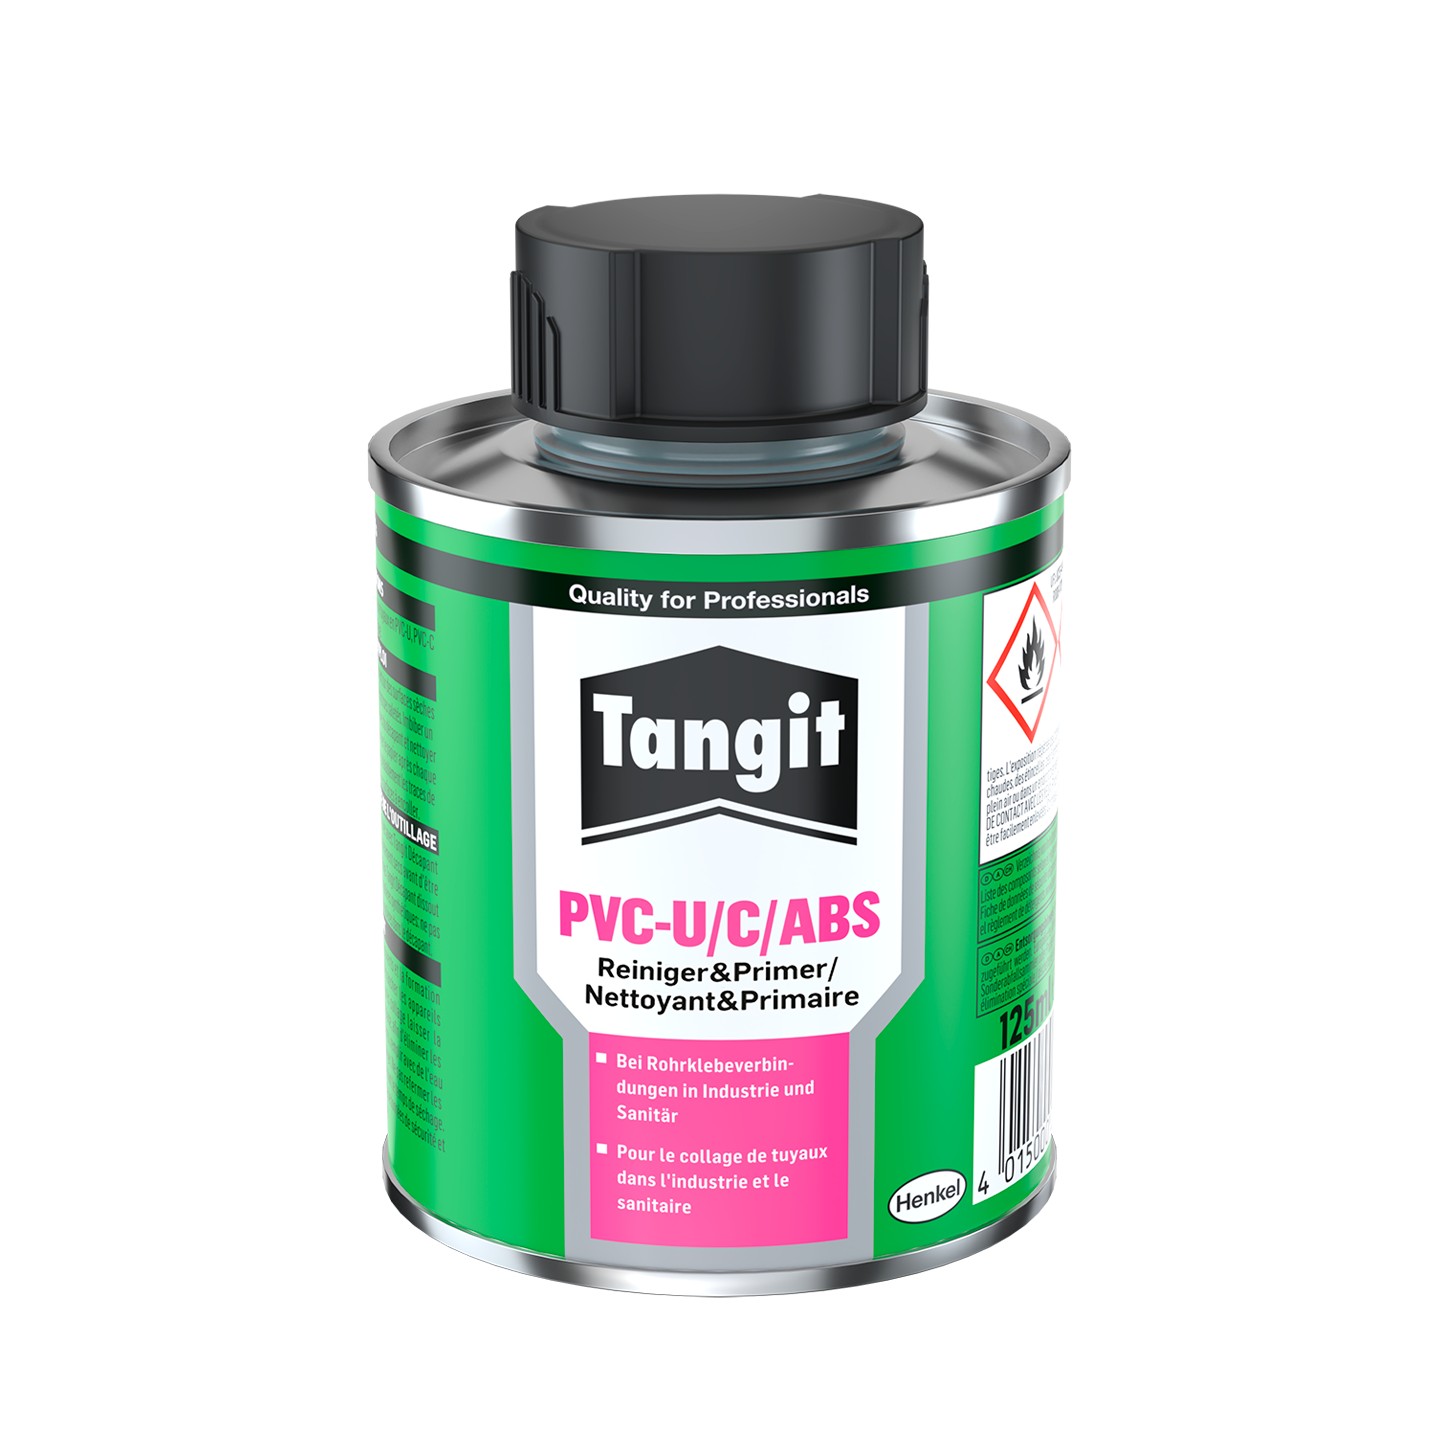 Tangit PVC-U/C/ABS-Cleaner - Tangit